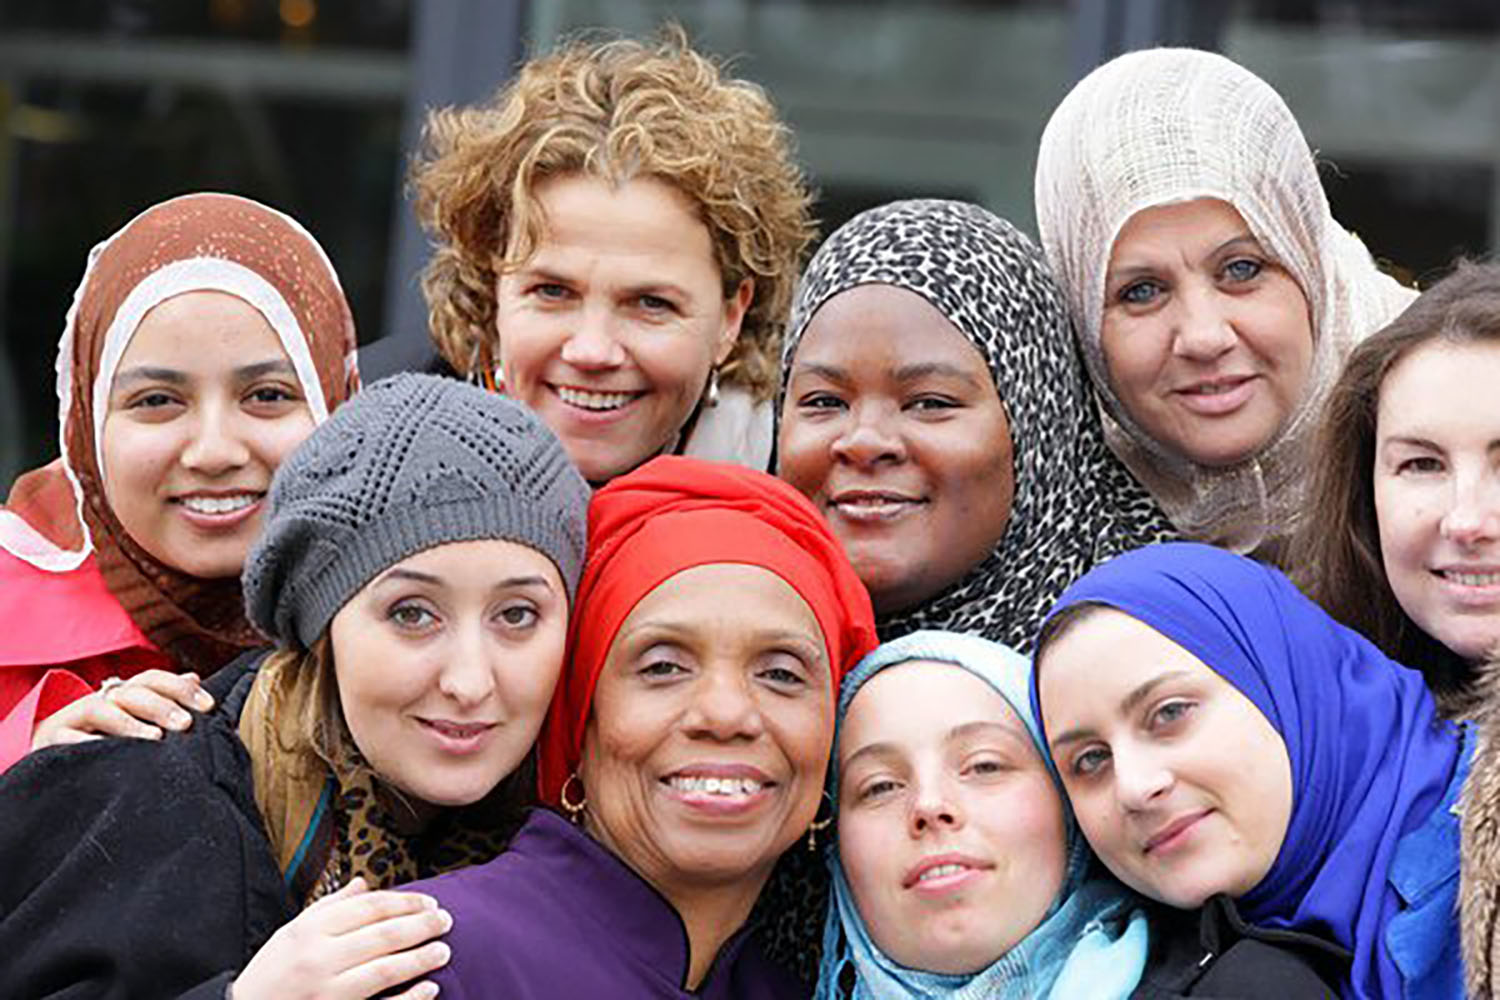 L’ENAR a publié un rapport sur les discriminations faites aux femmes musulmanes en Europe. Ce rapport est issu de huit rapports nationaux (Allemagne, Belgique, Danemark, France, Italie, Pays-Bas, Royaume-Uni et Suède), basés sur des recherches et des entretiens. Téléchargez le communiqué de presse de l’association à ce sujet et regardez la vidéo sur leur site (en anglais)